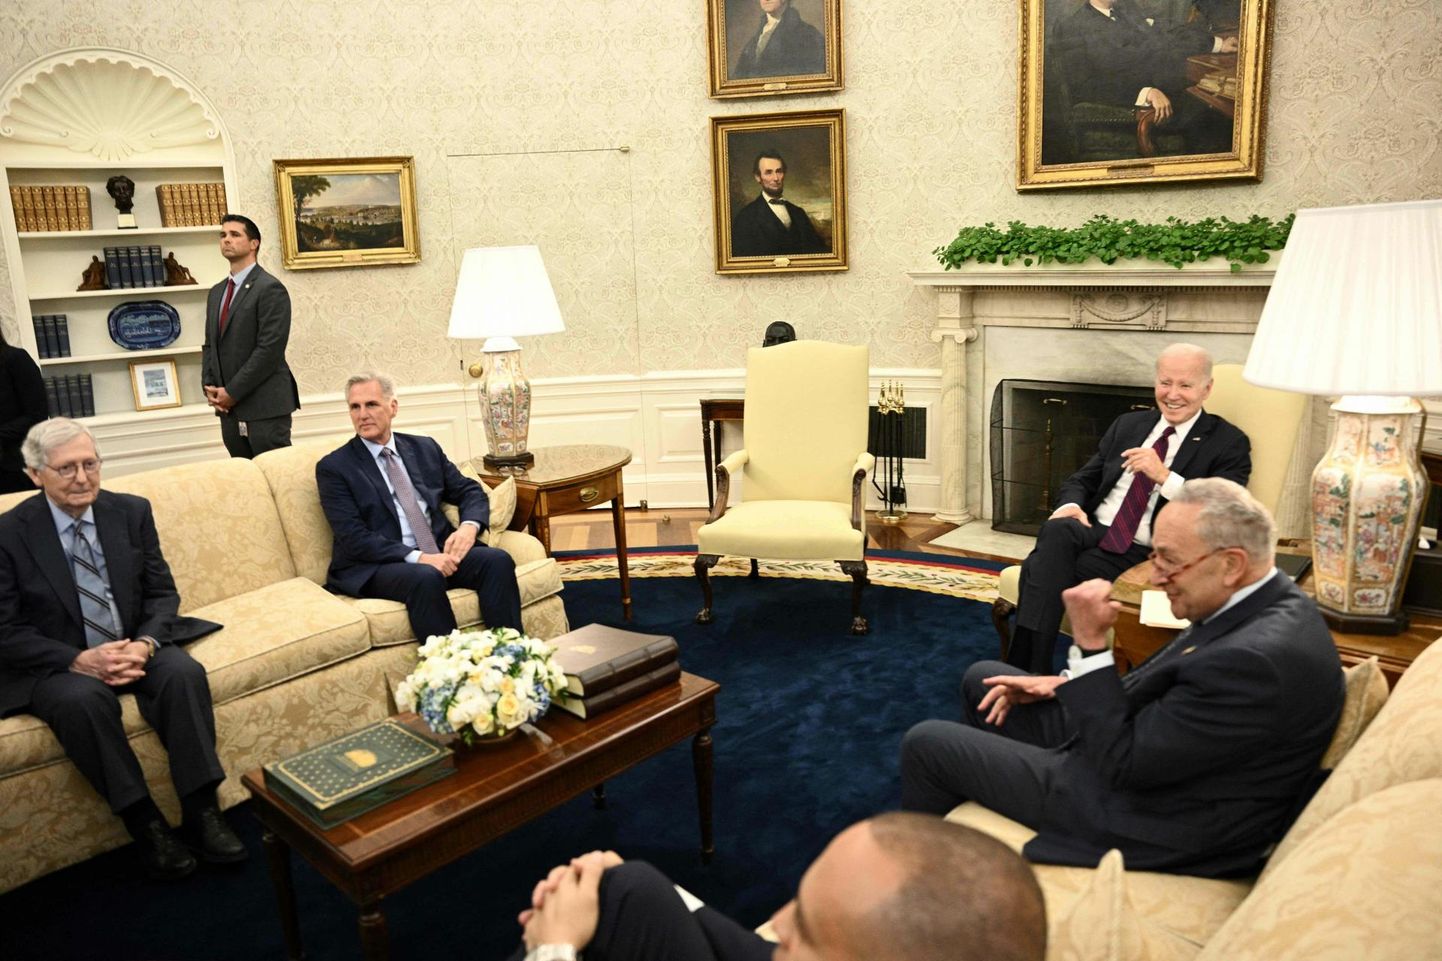 Ameerika Ühendriikide president Joe Biden 9. mail kohtumas võlapiiri teemal Kongressi demokraatide ja vabariiklaste juhtidega.